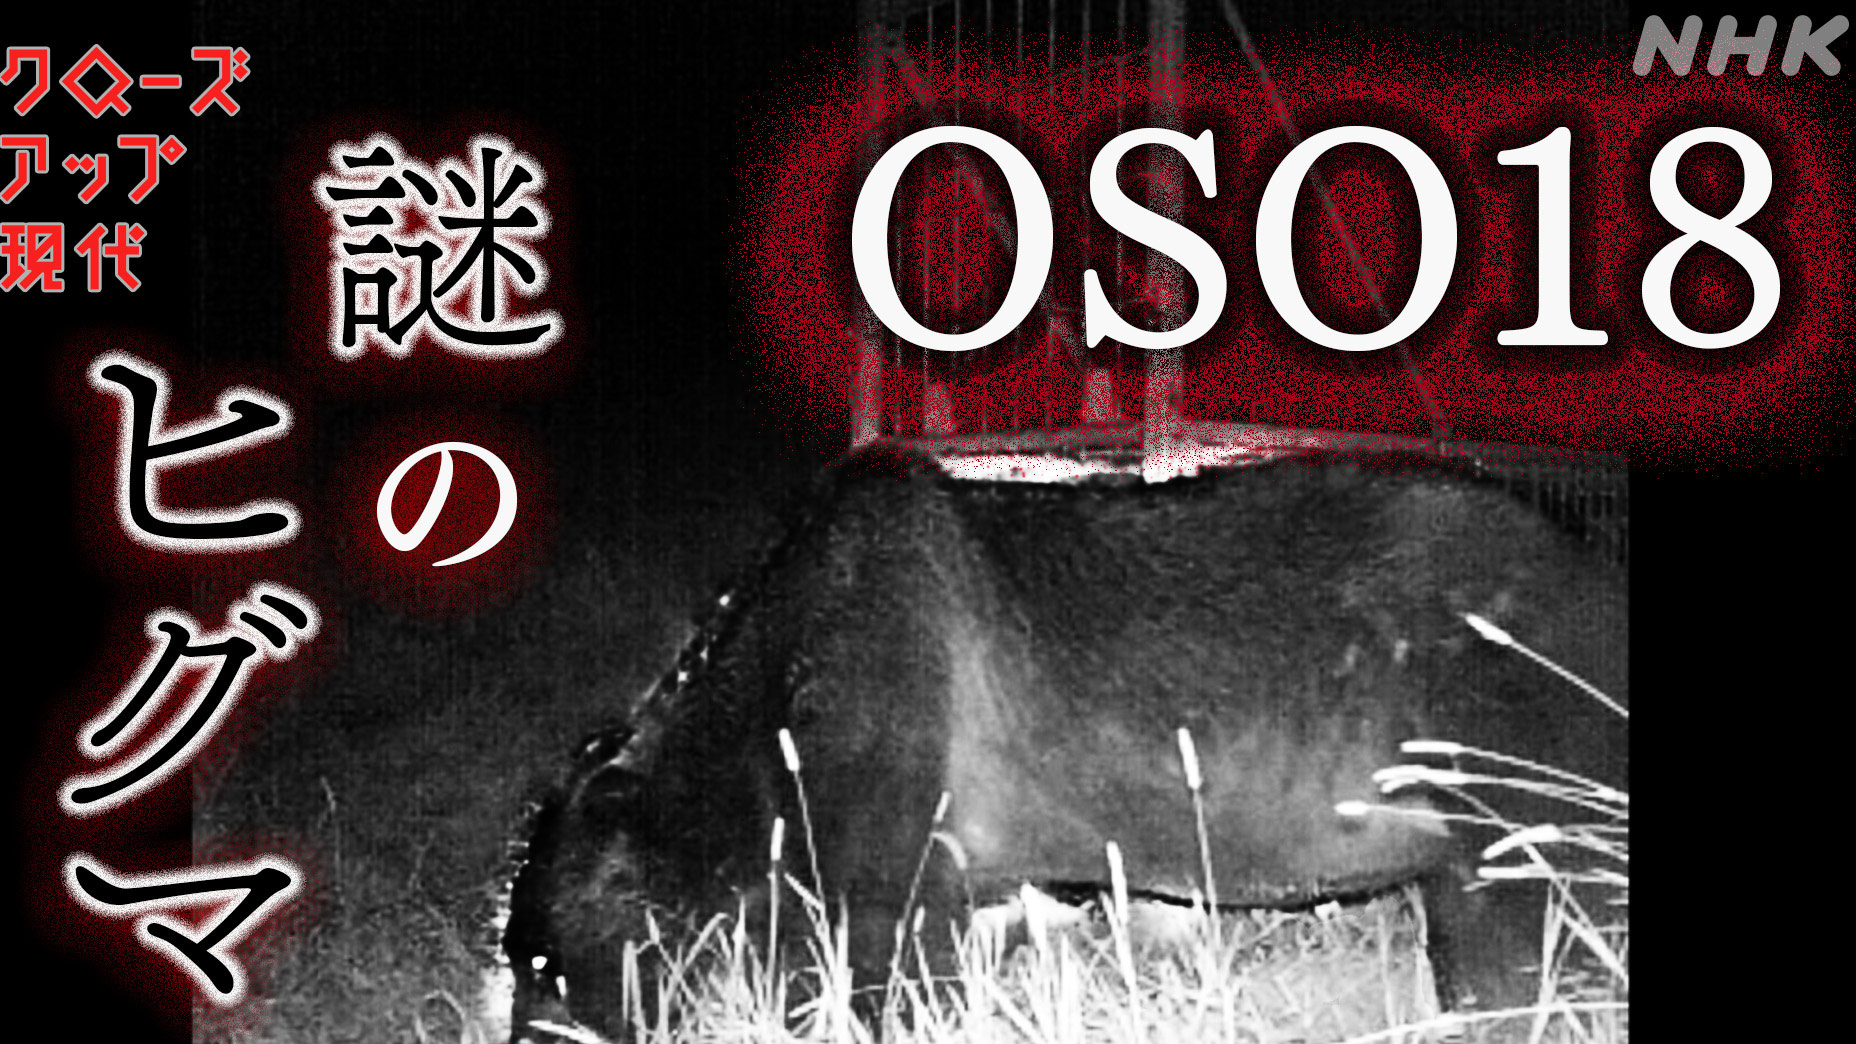 謎のヒグマ「OSO18」を追え!